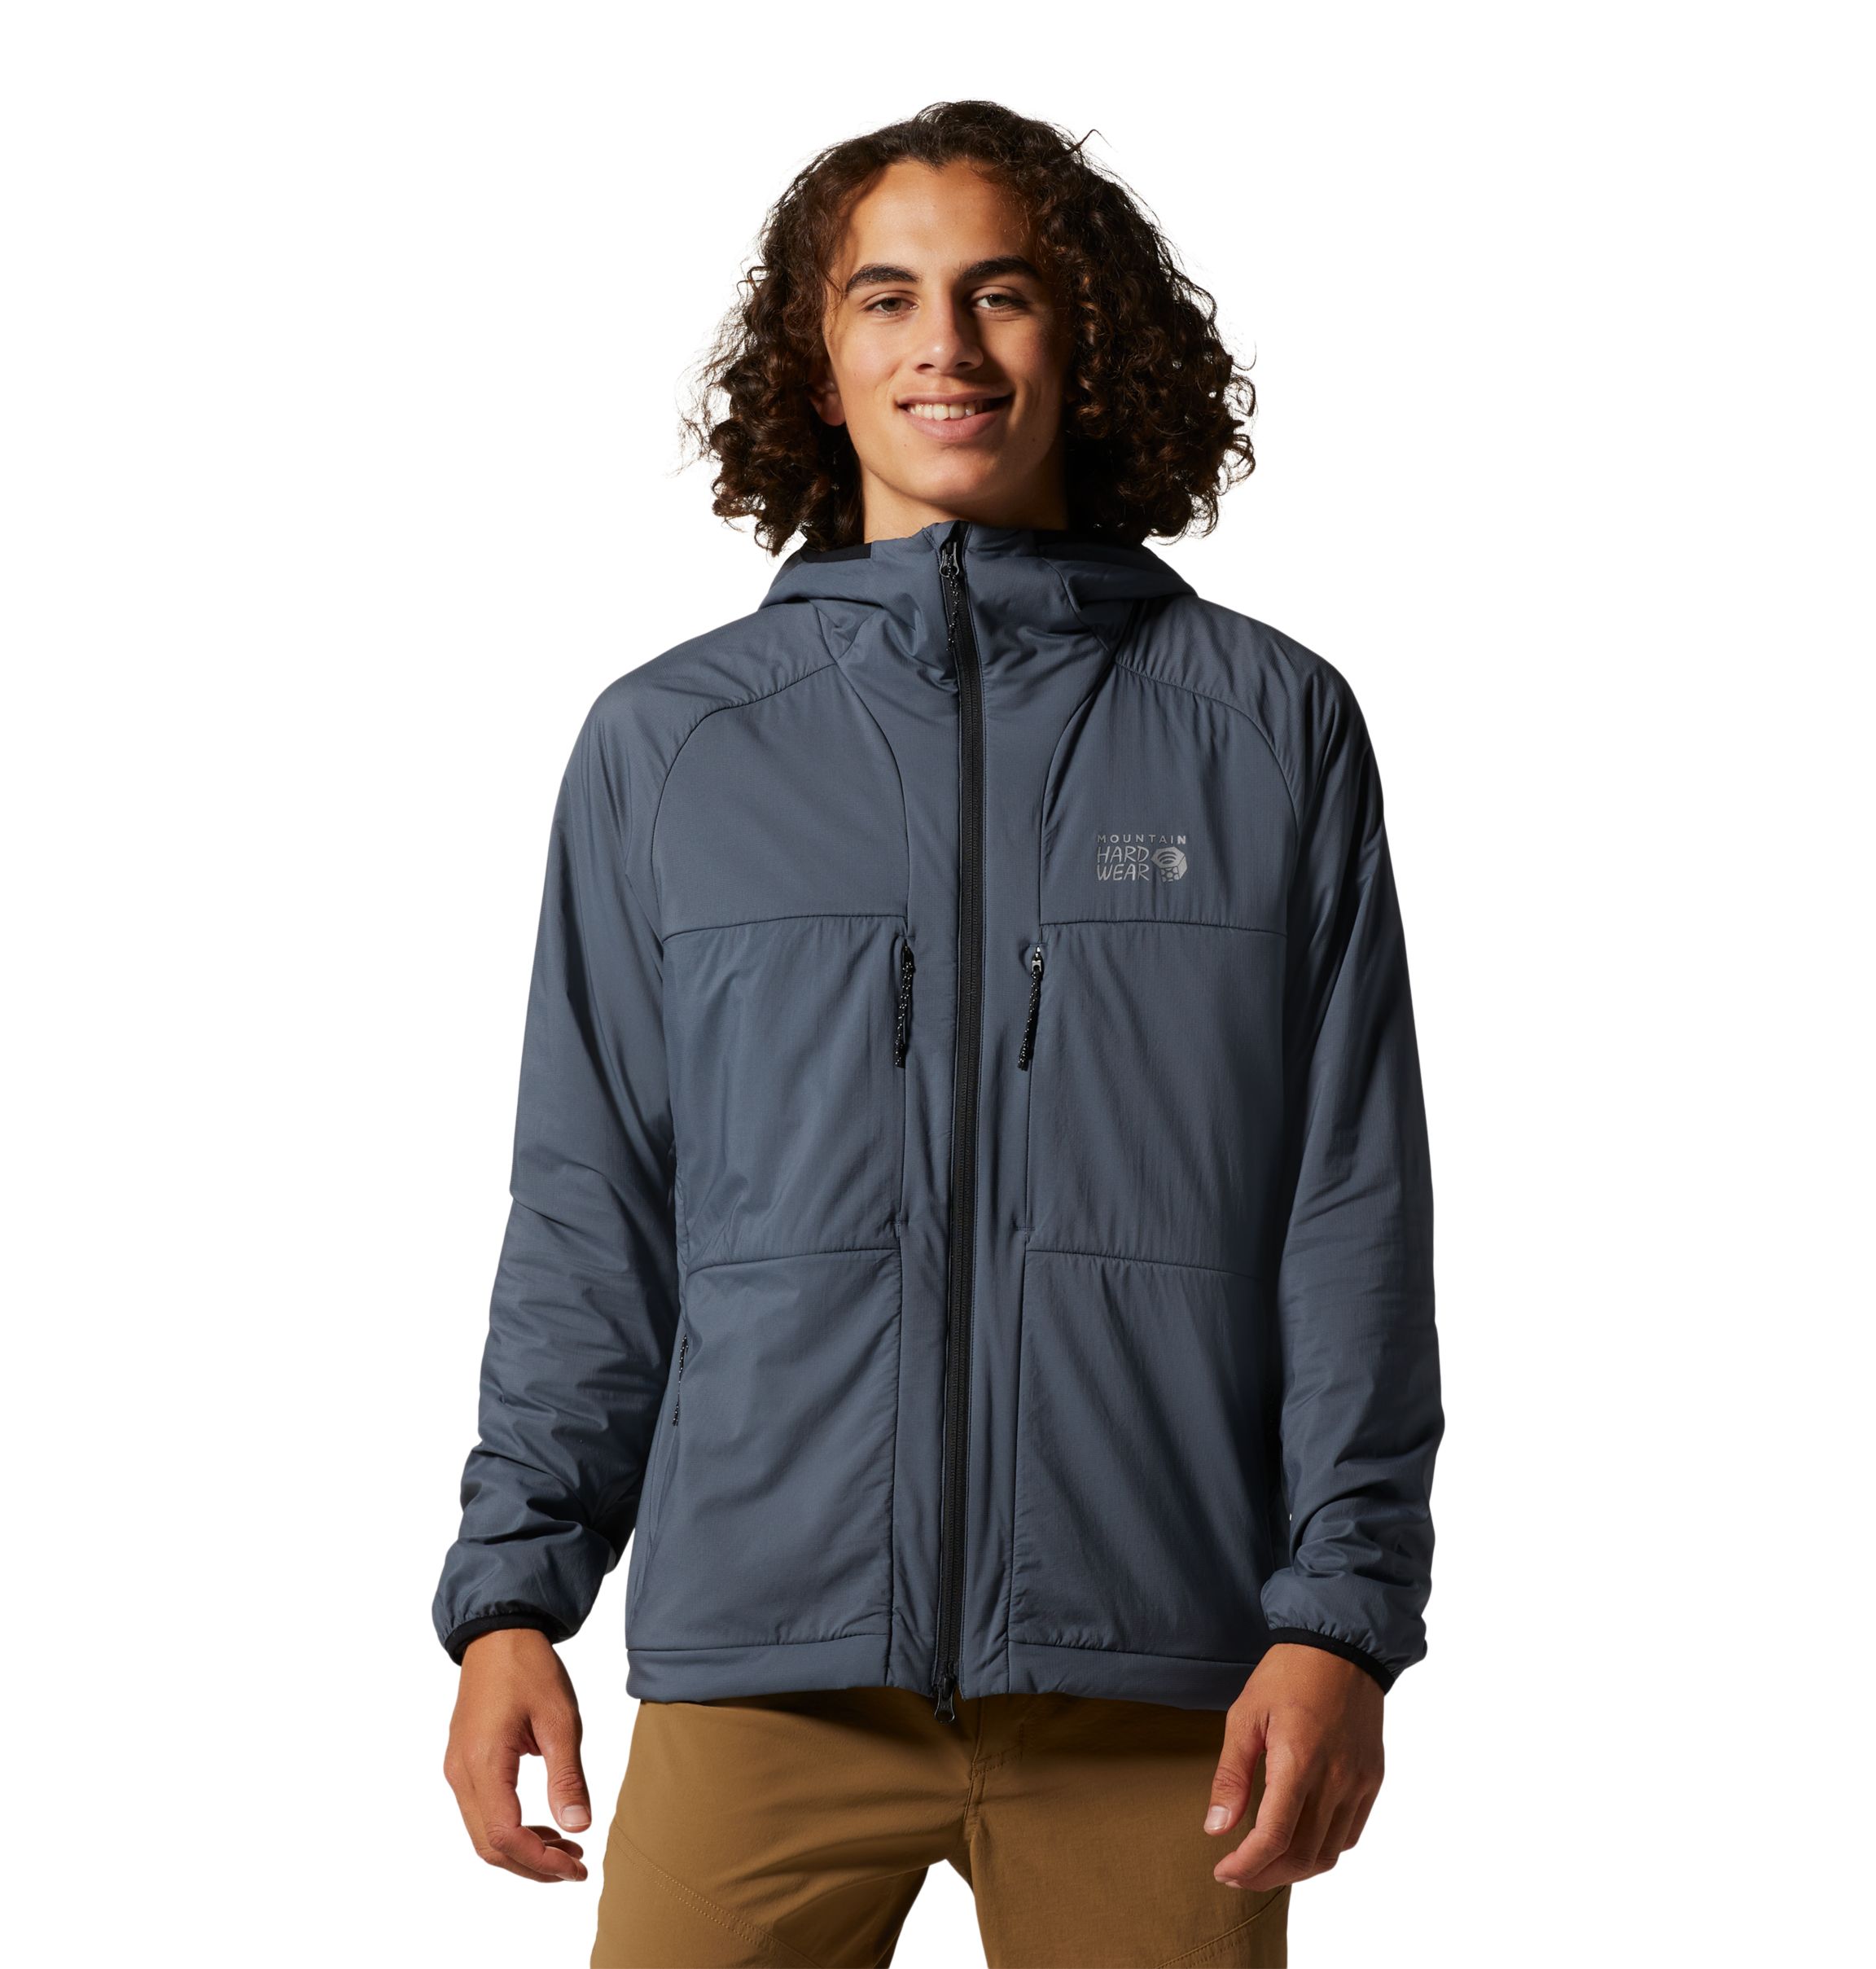 Mountain Hardwear Kor AirShell Warm Jacket - Men's with Free S&H